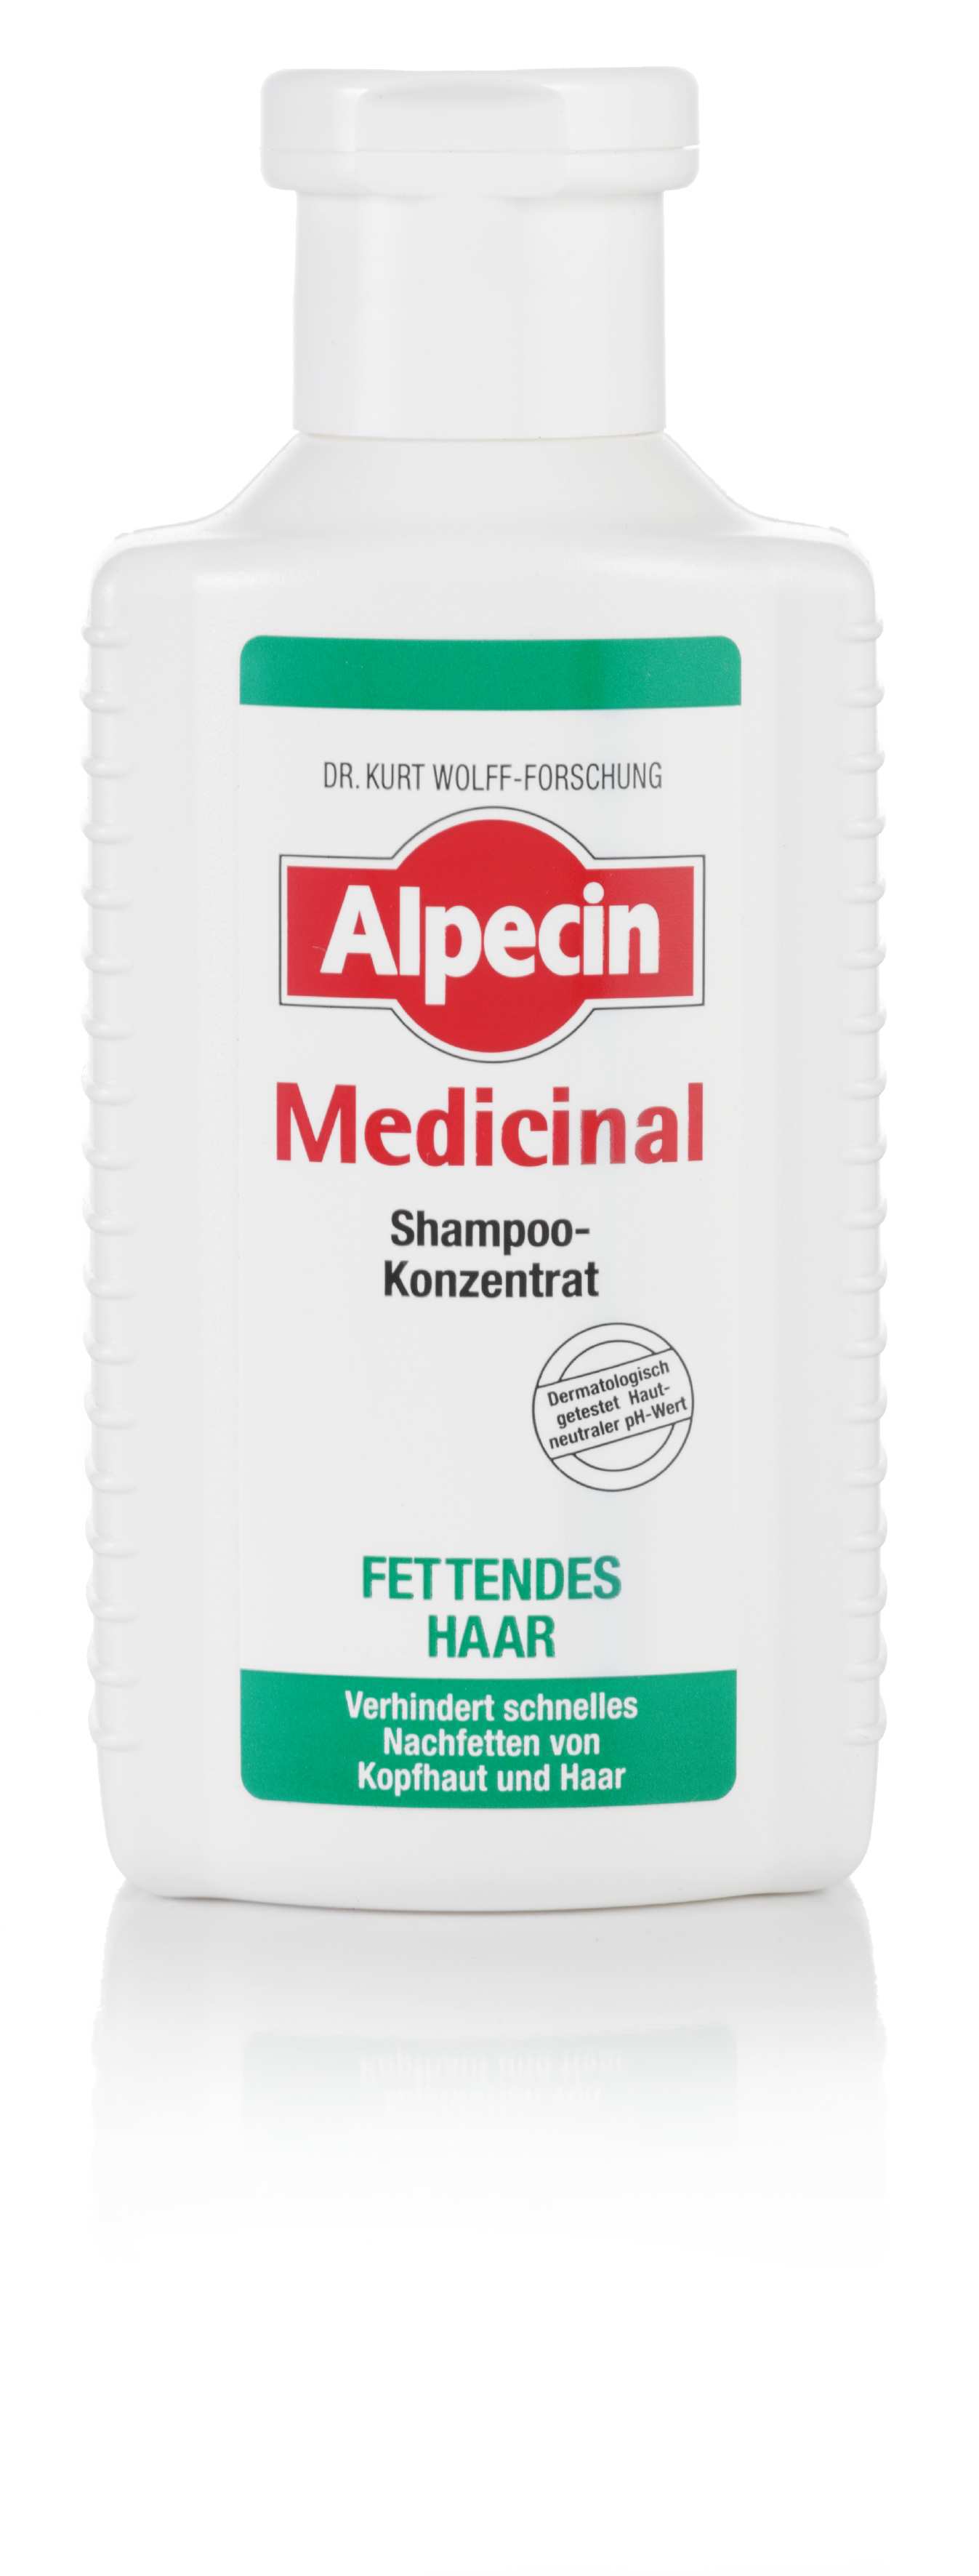 Alpecin Medizinal Shampoo-Konzentrat fettendes Haar 200ml